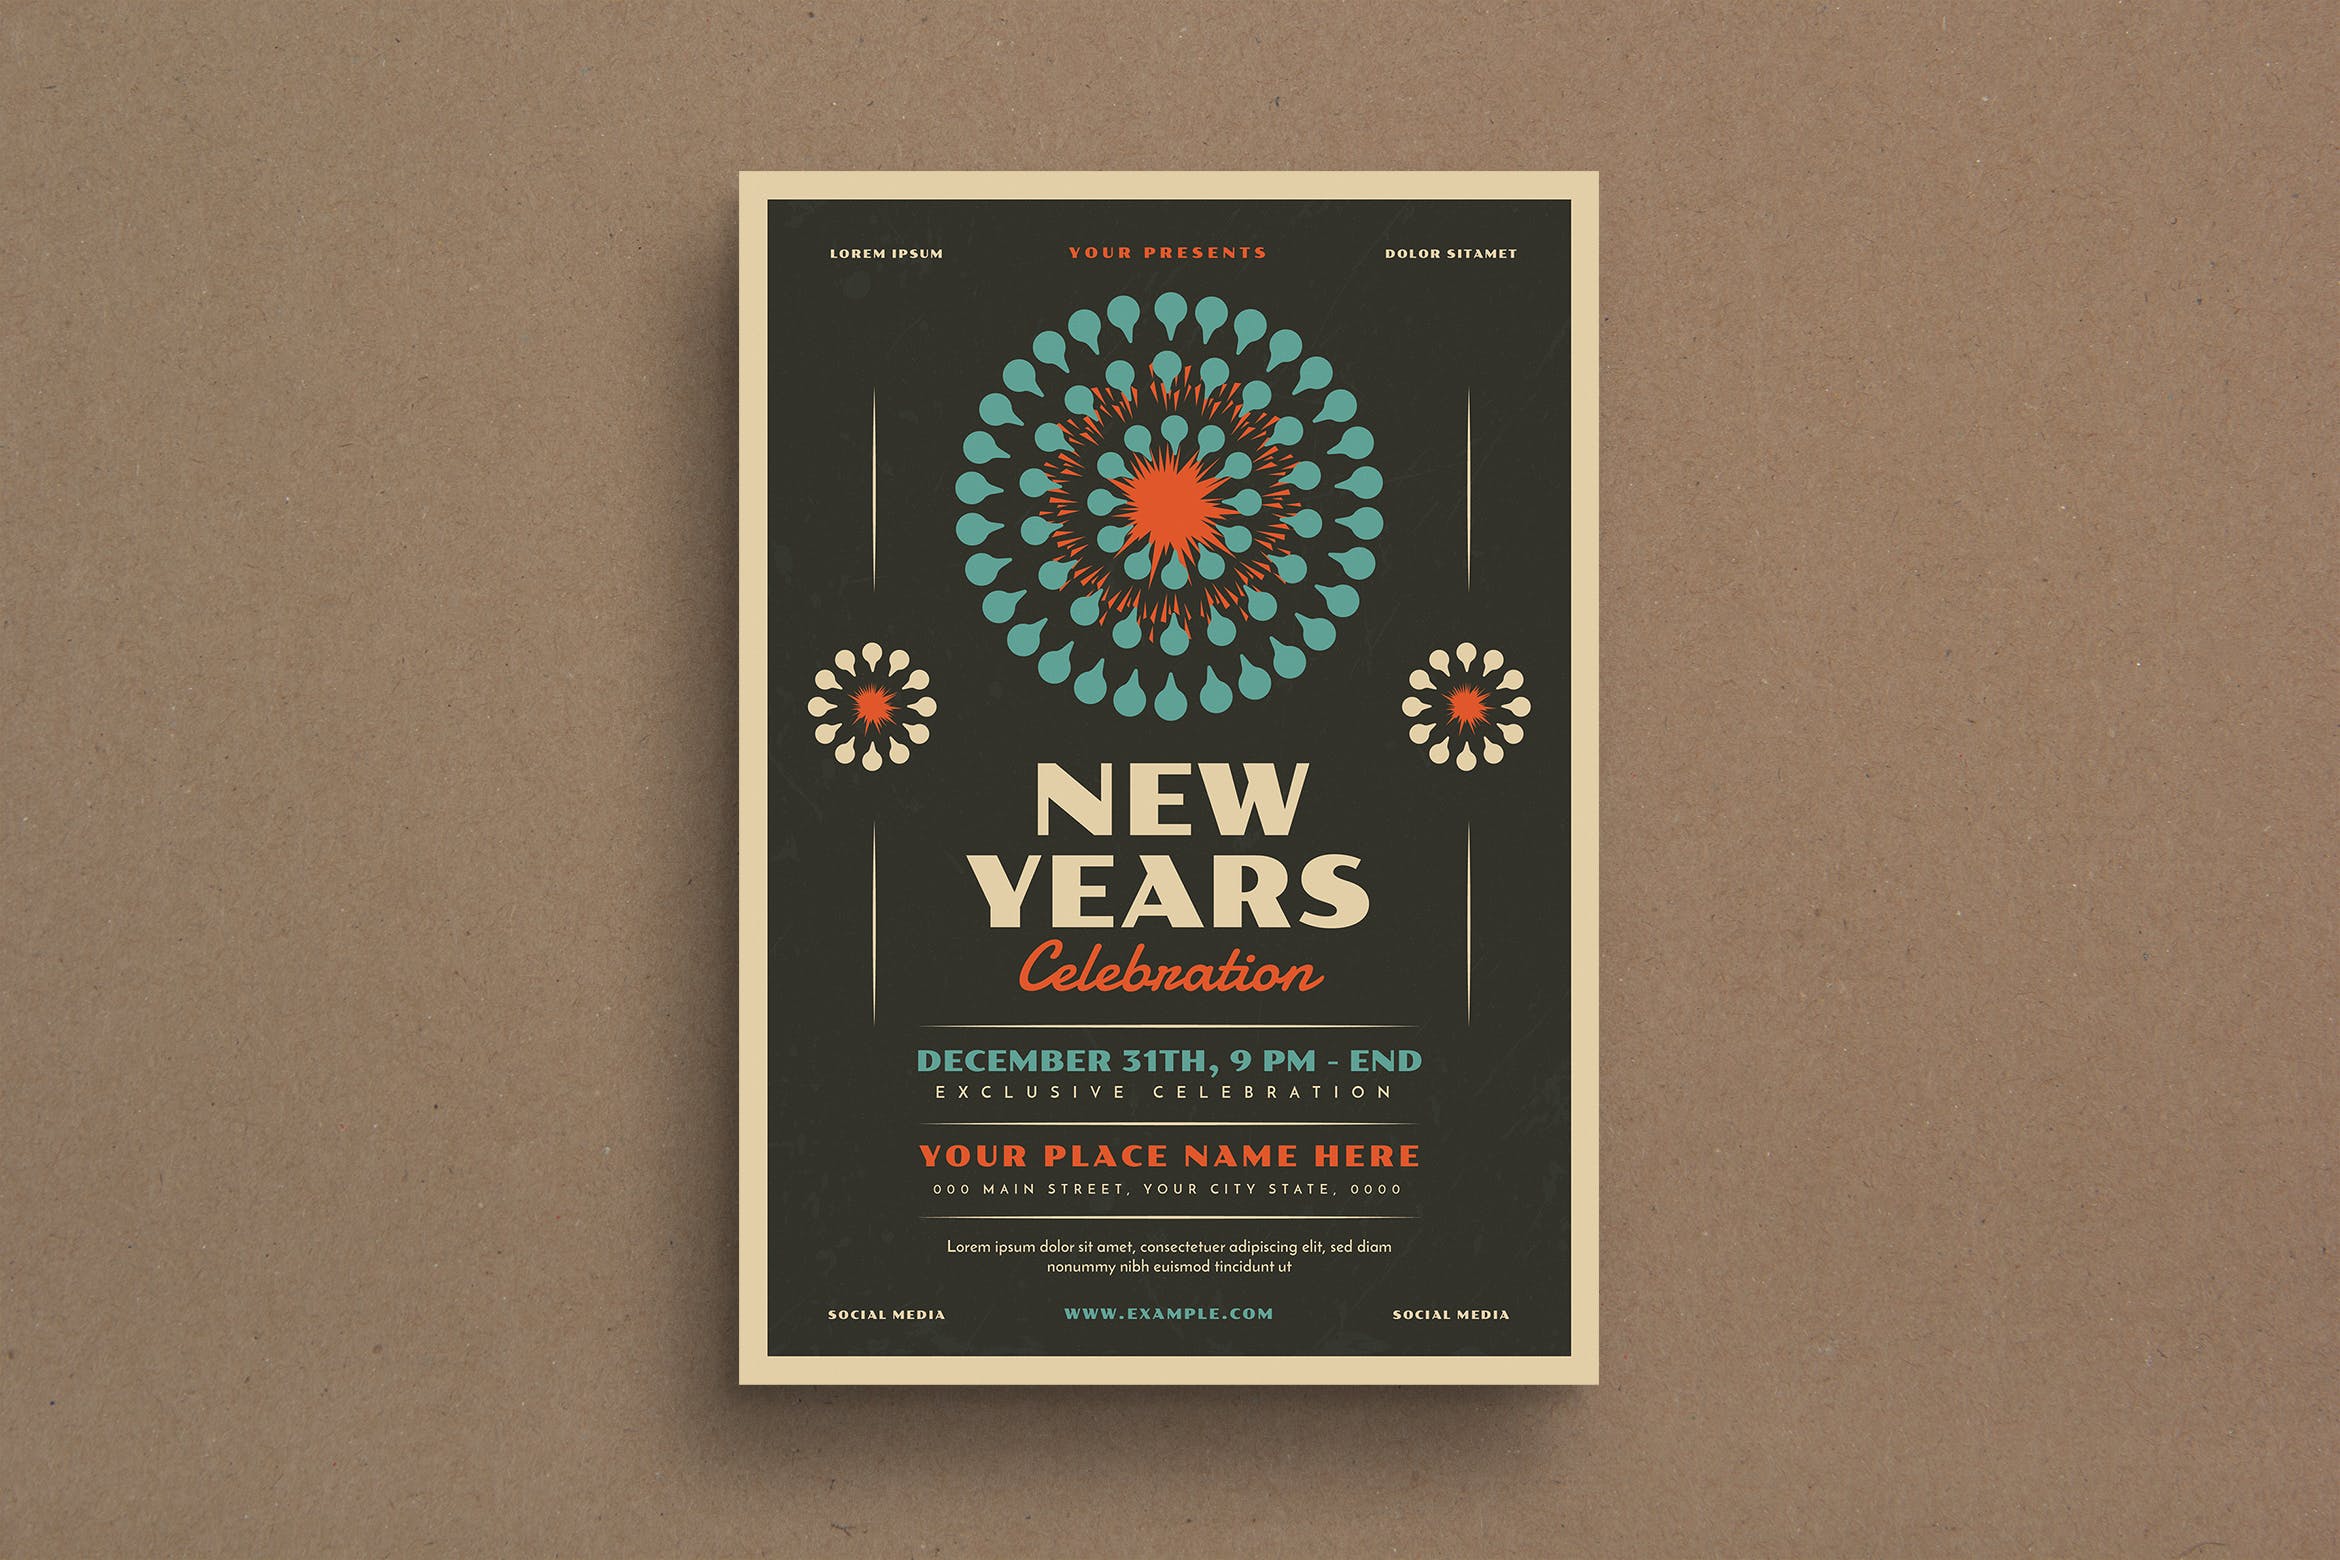 复古风格新年主题活动海报传单模板 Retro New Year’s Event Flyer插图